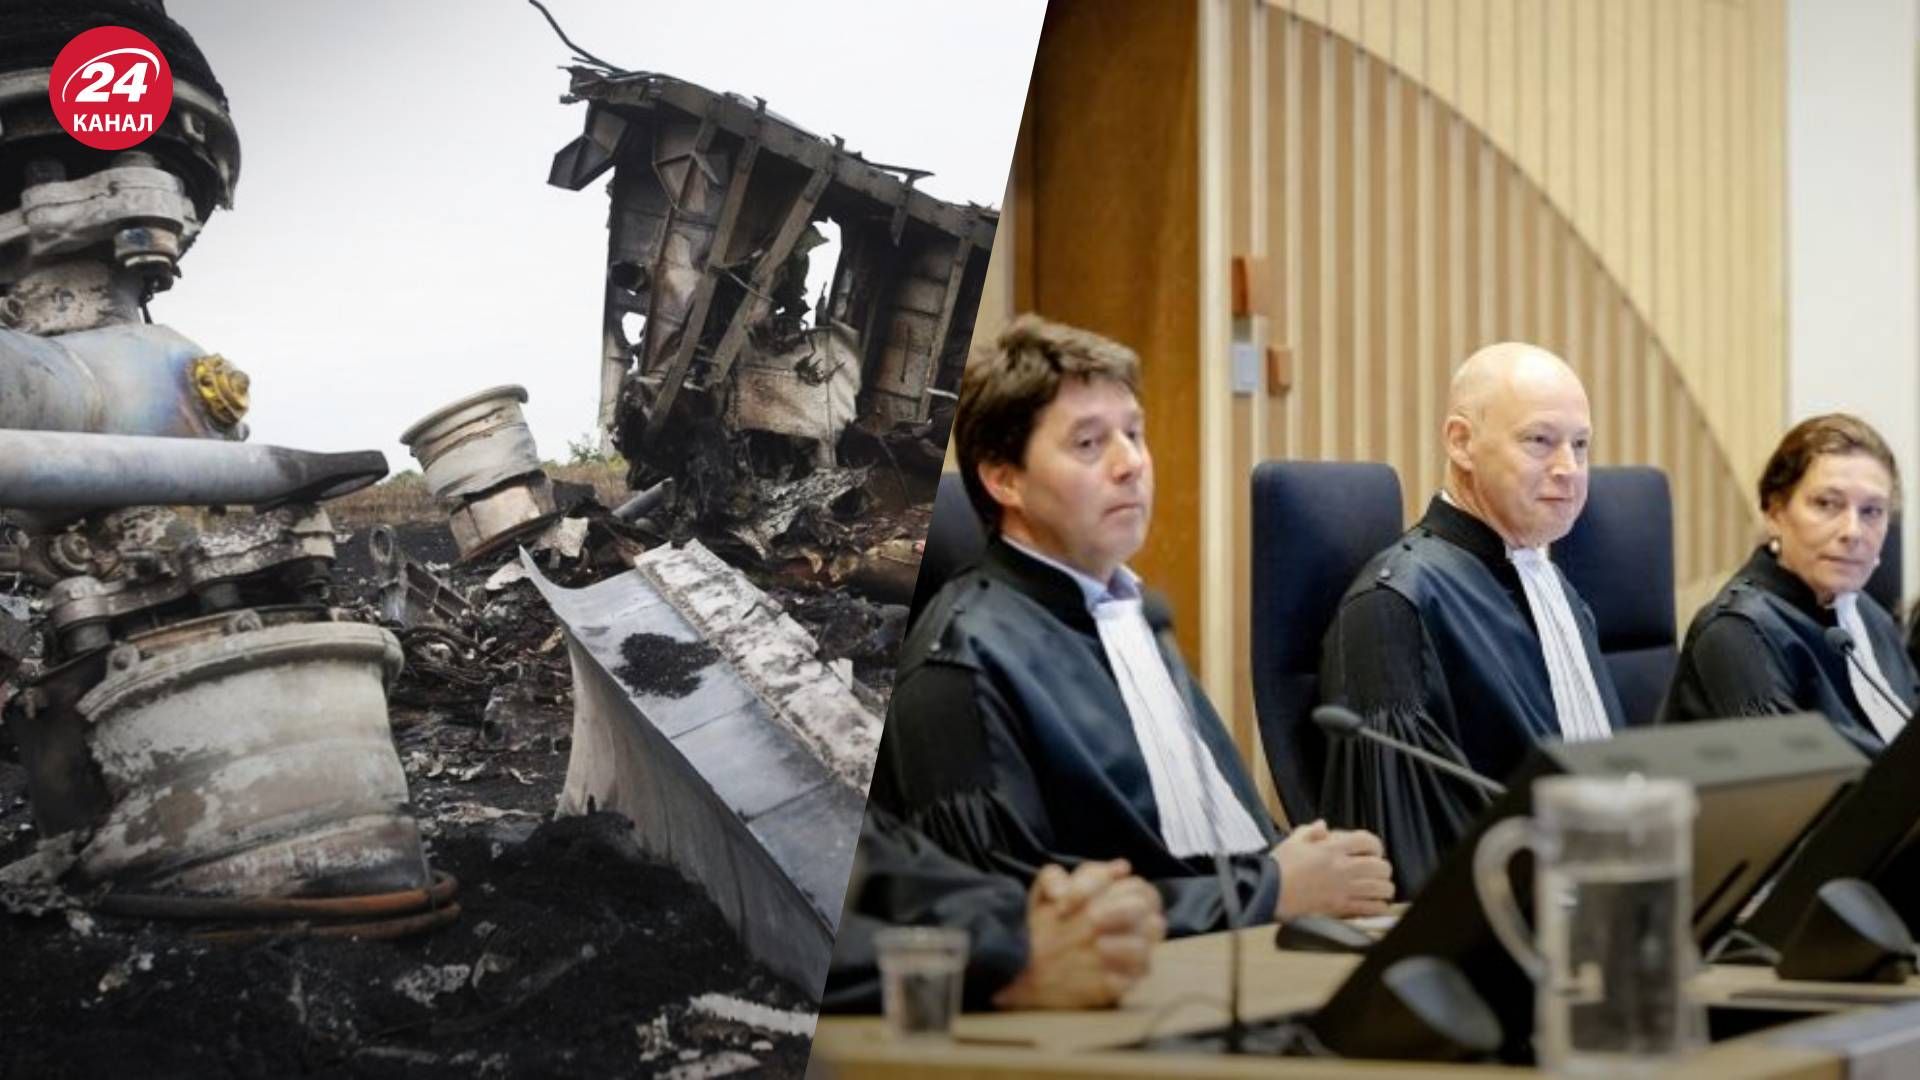 Приговор по делу MH17 выносит суд в Гааге 17 ноября – онлайн-трансляция - 24 Канал